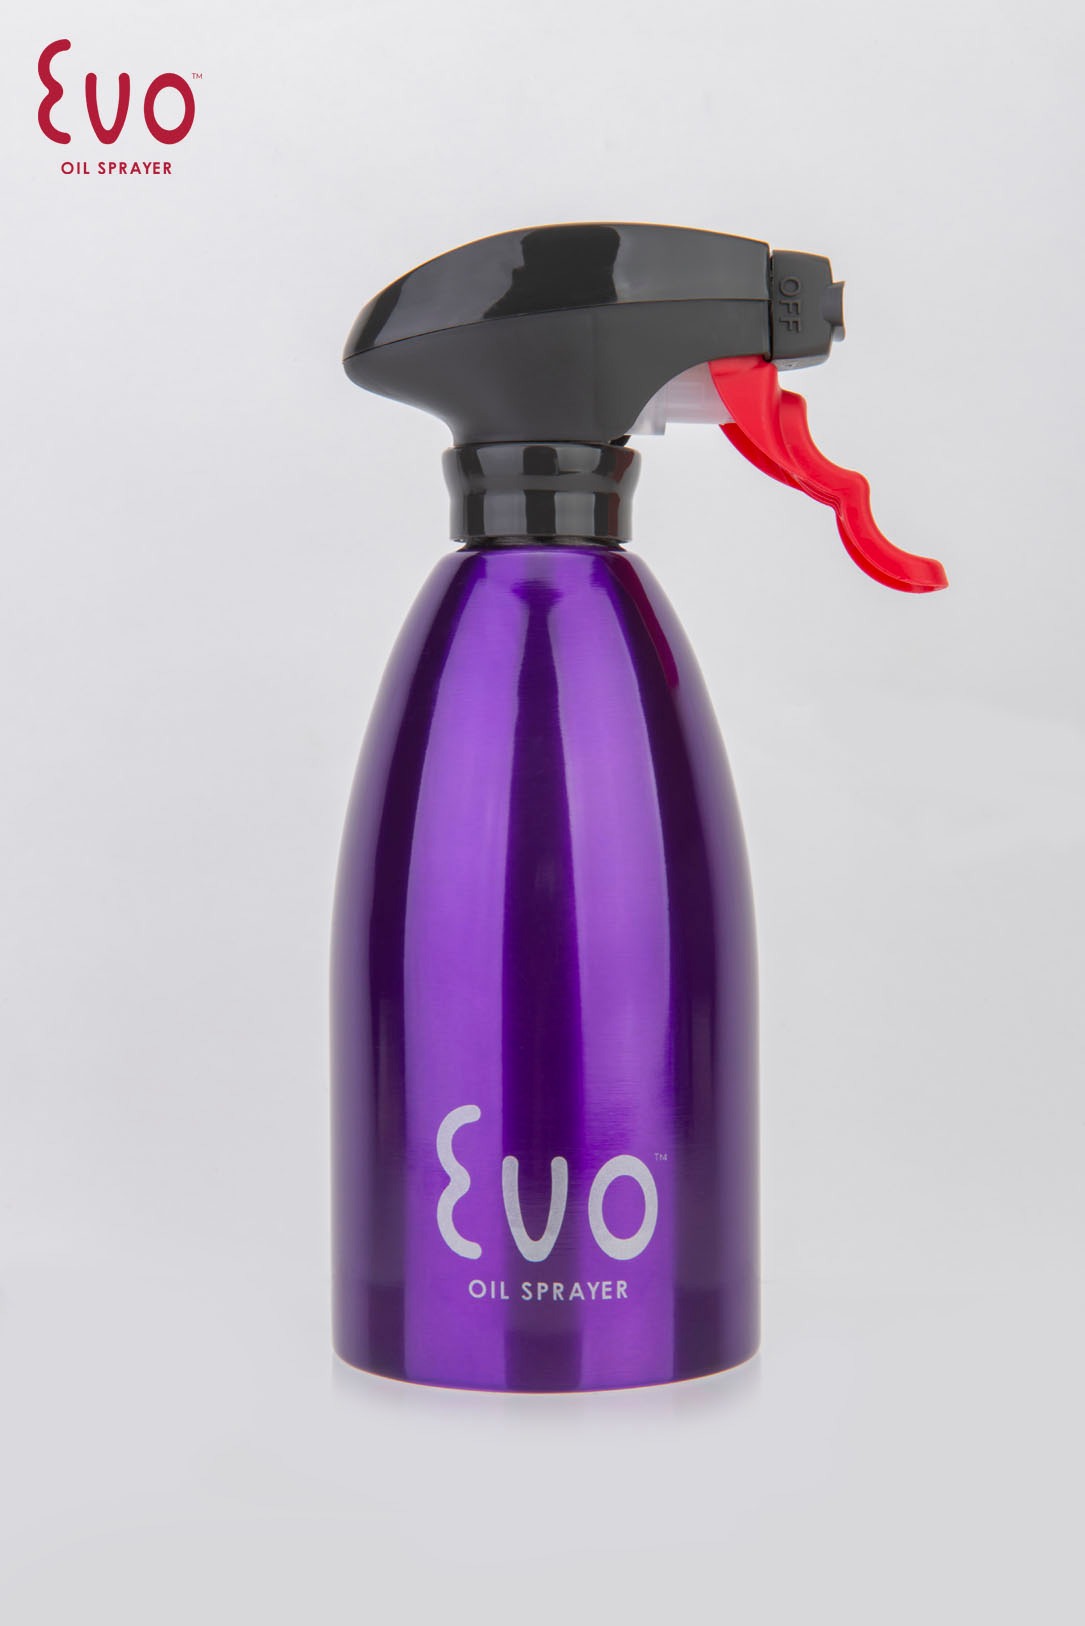 Evo Sprayer一噴上手不鏽鋼噴油罐(紫)